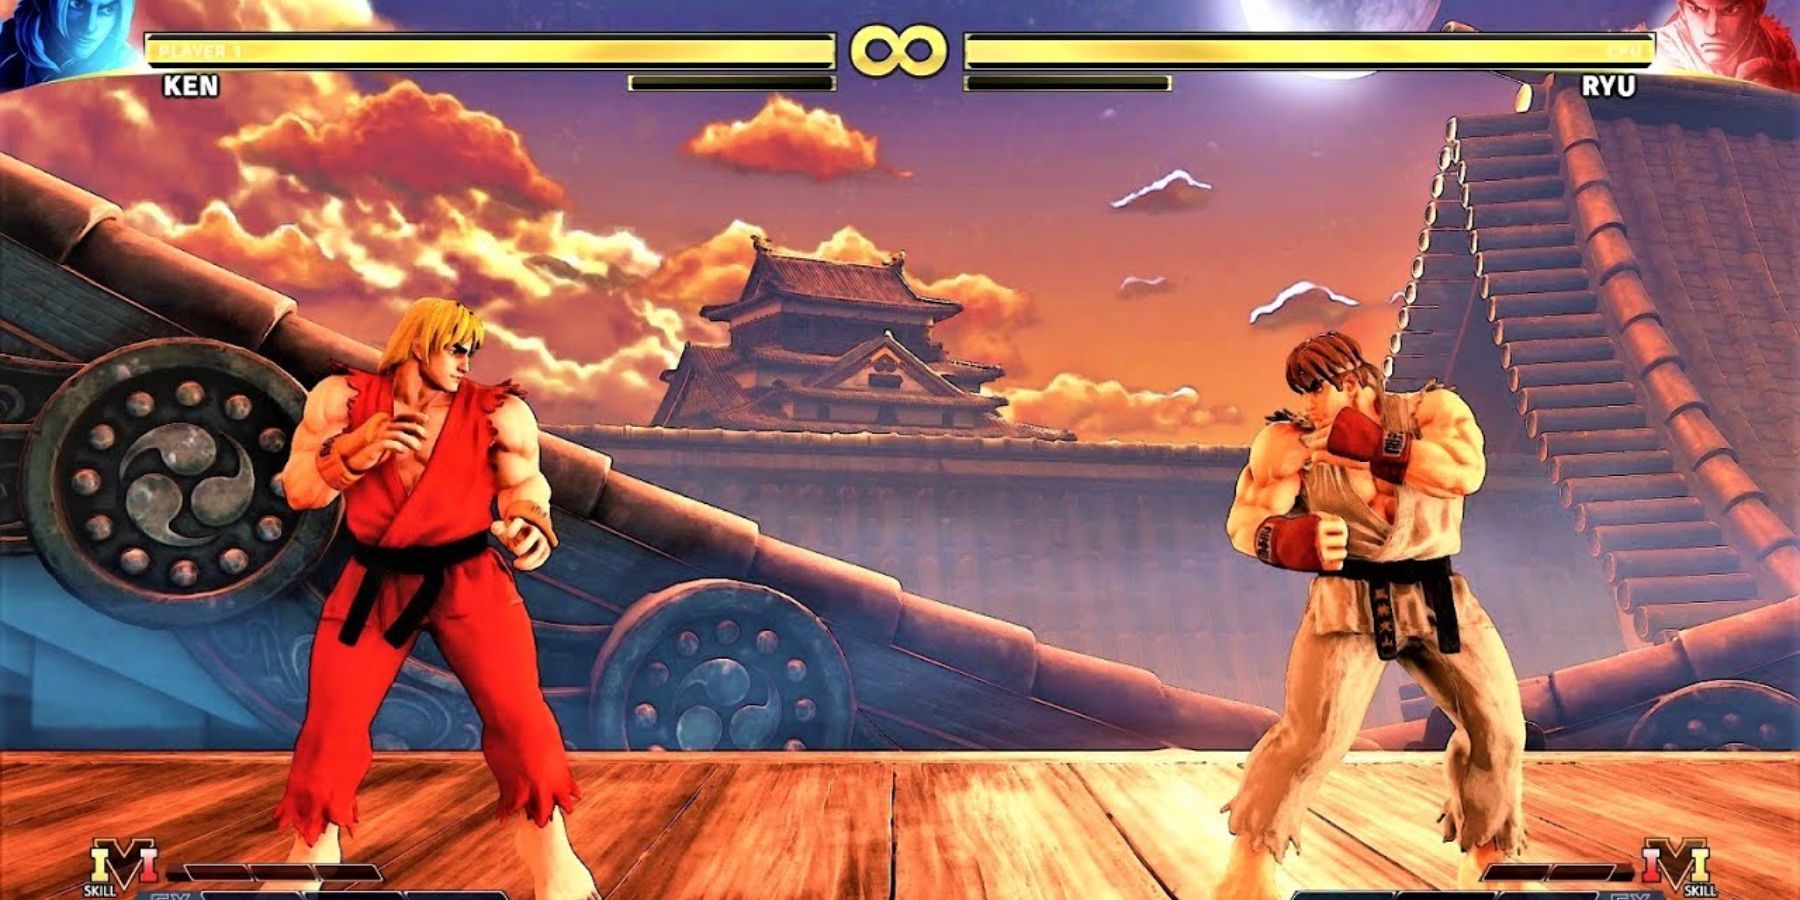 Ken battling Ryu